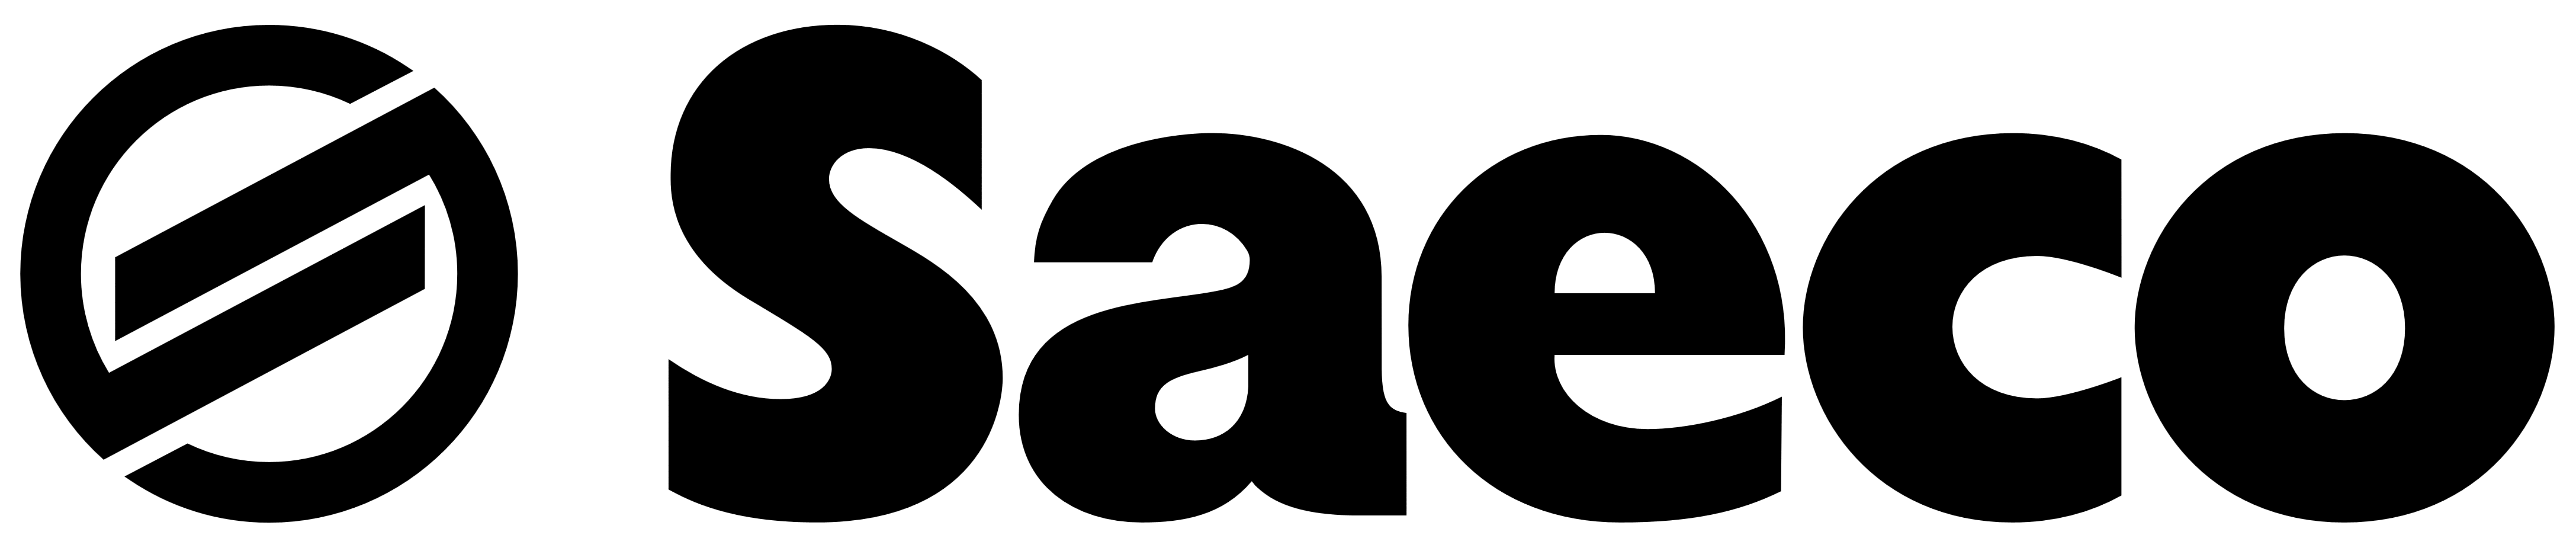 Saeco logo, logotype